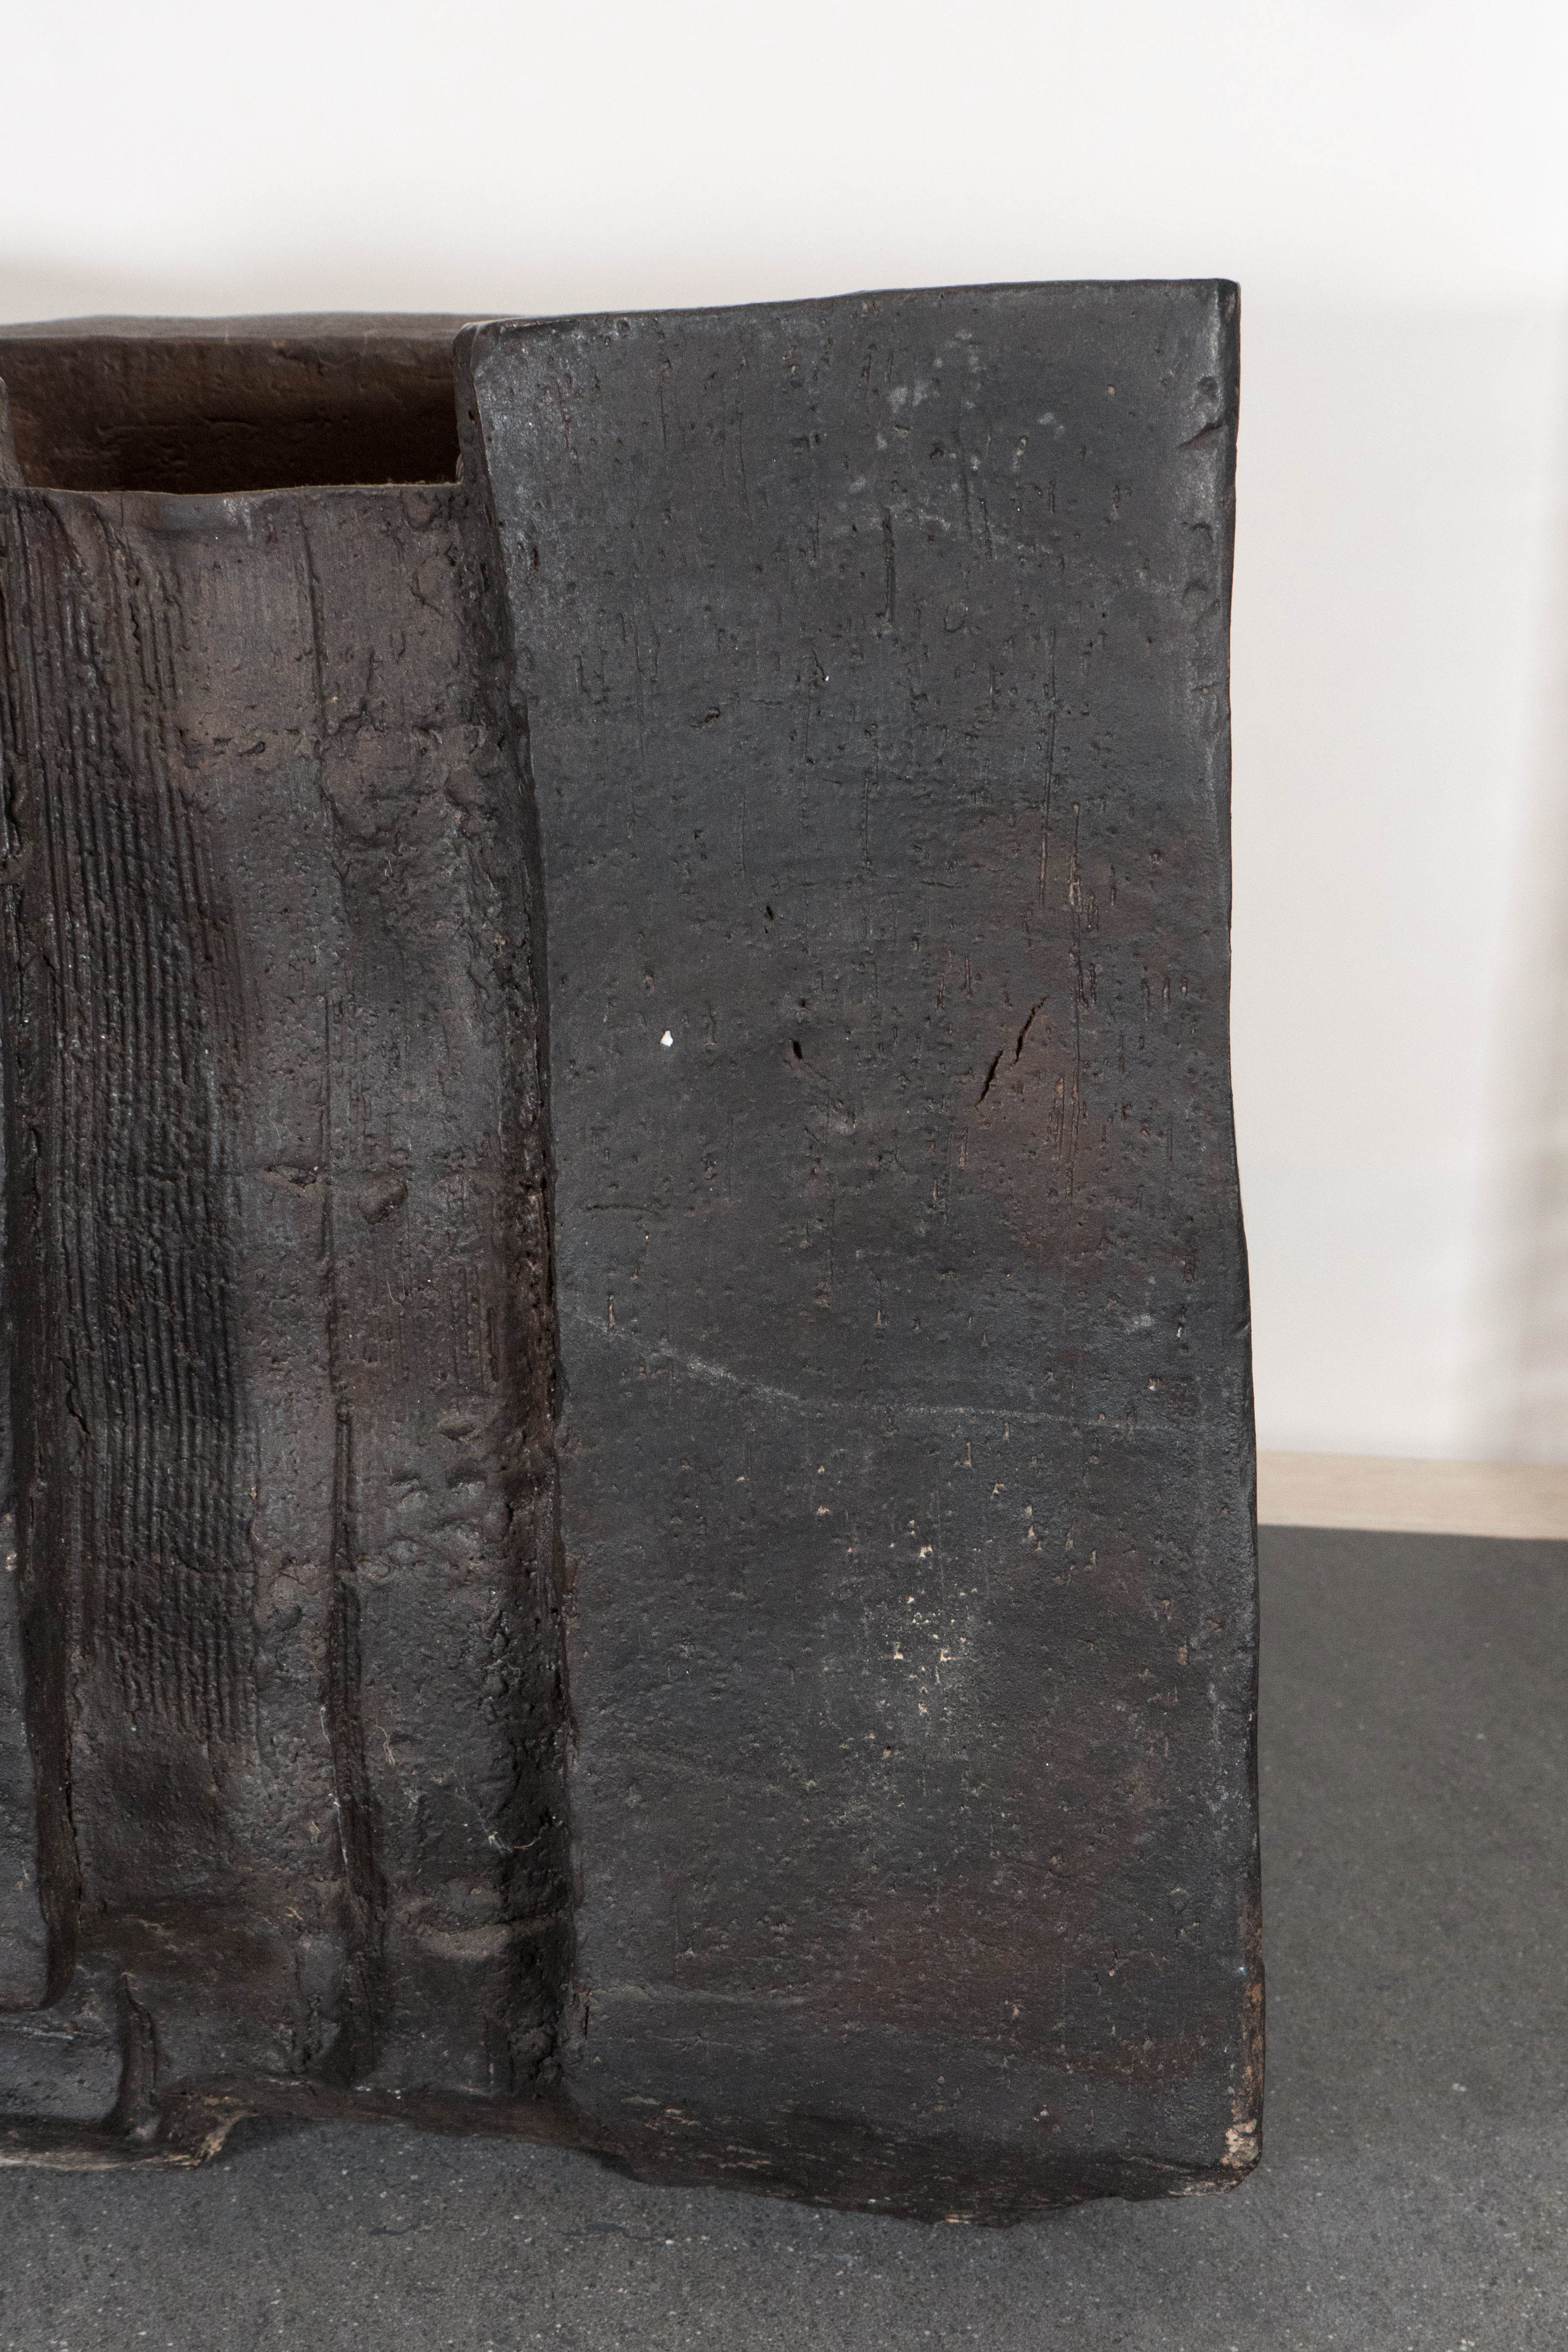 Modern Eric Astoul Large Sculptural Black Ceramic Object or Vase, Untitled 2014